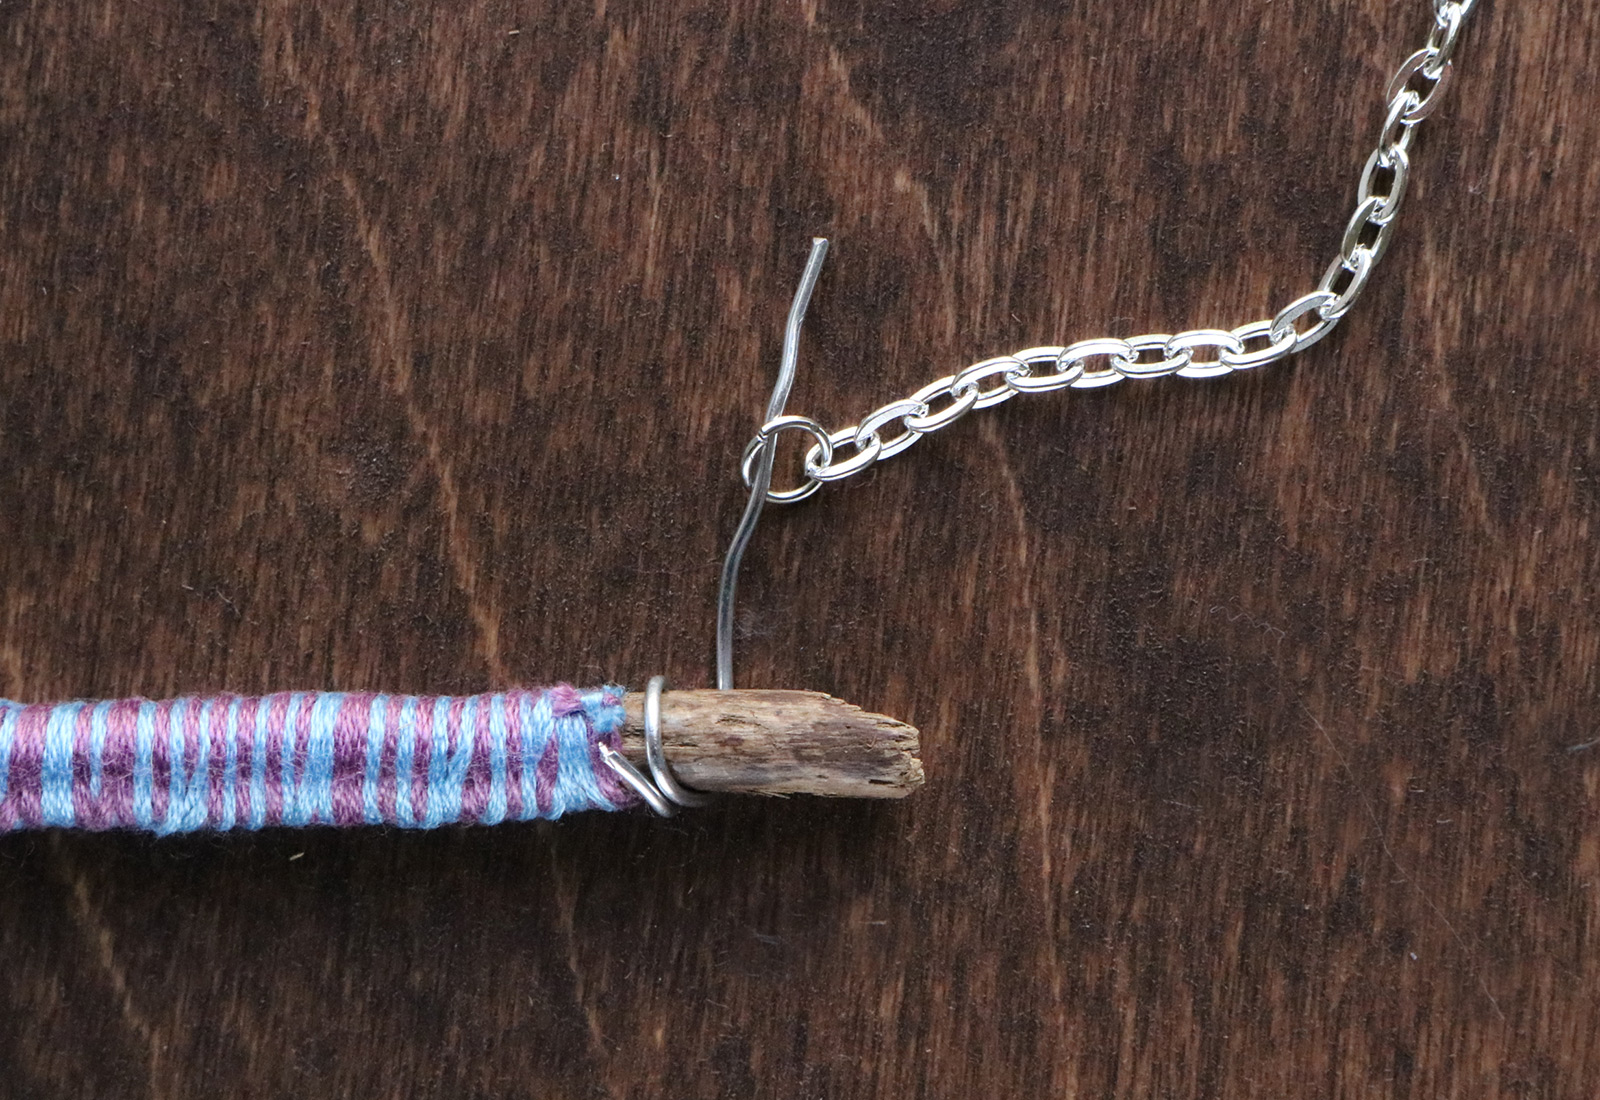 Twig Monogram Necklace DIY